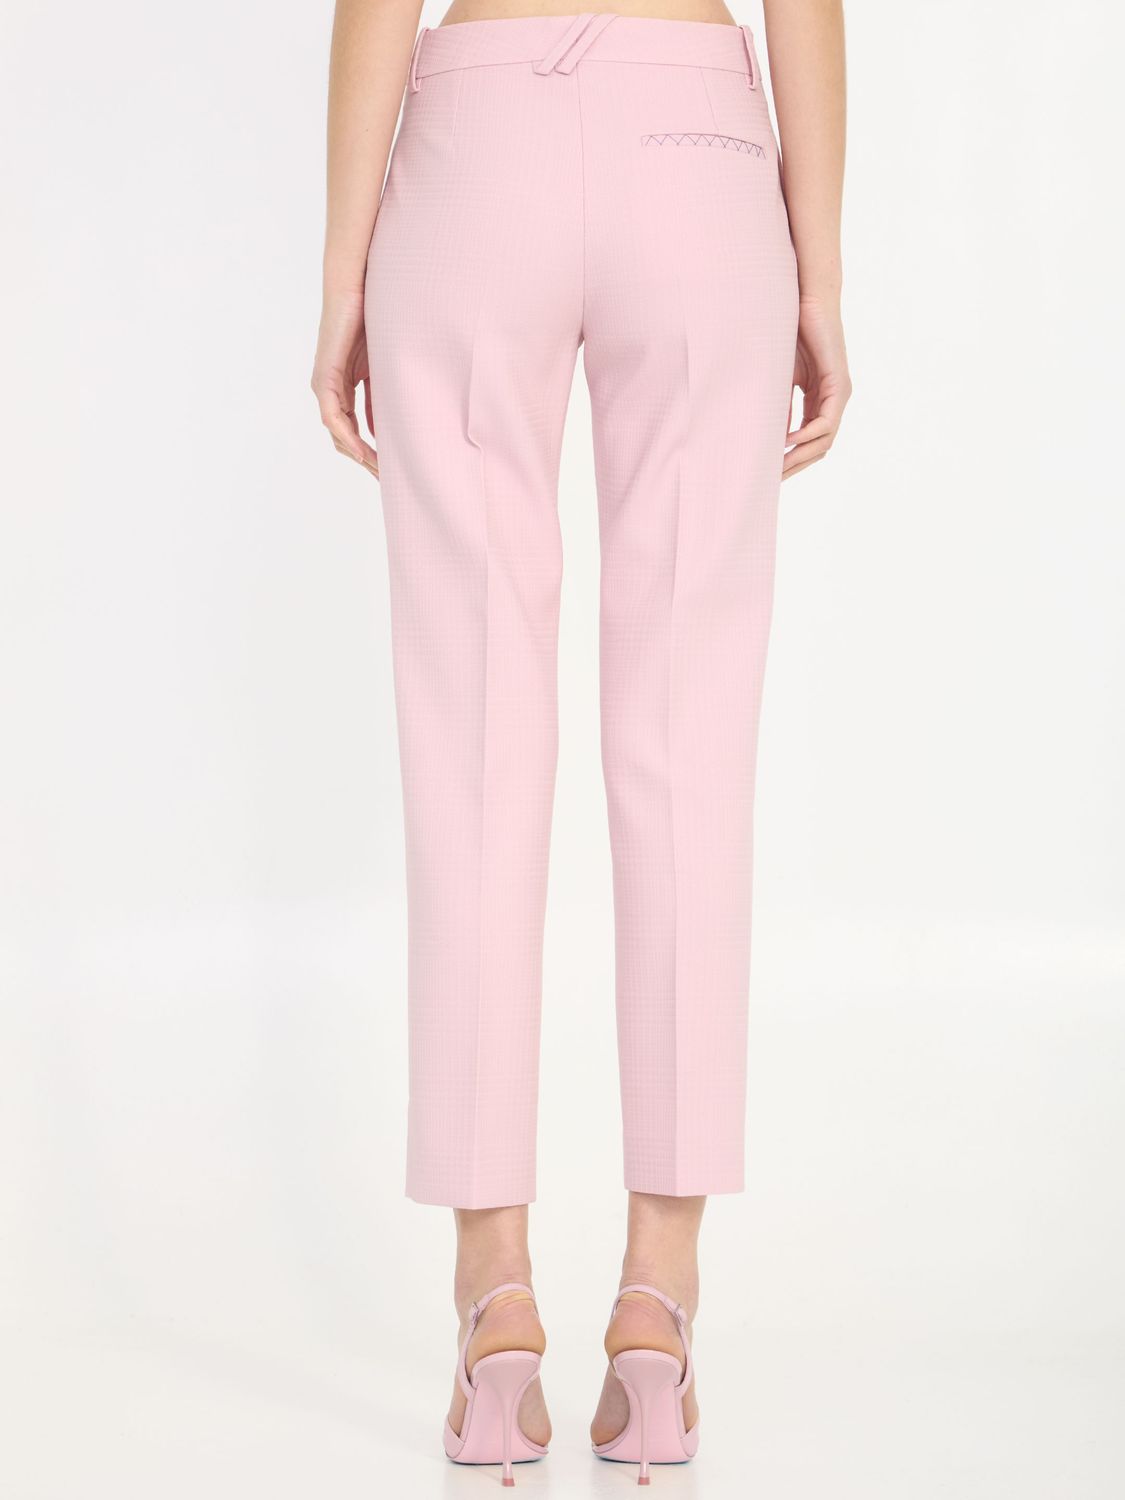 粉色羊毛定制长裤-正装版型-英国尺码